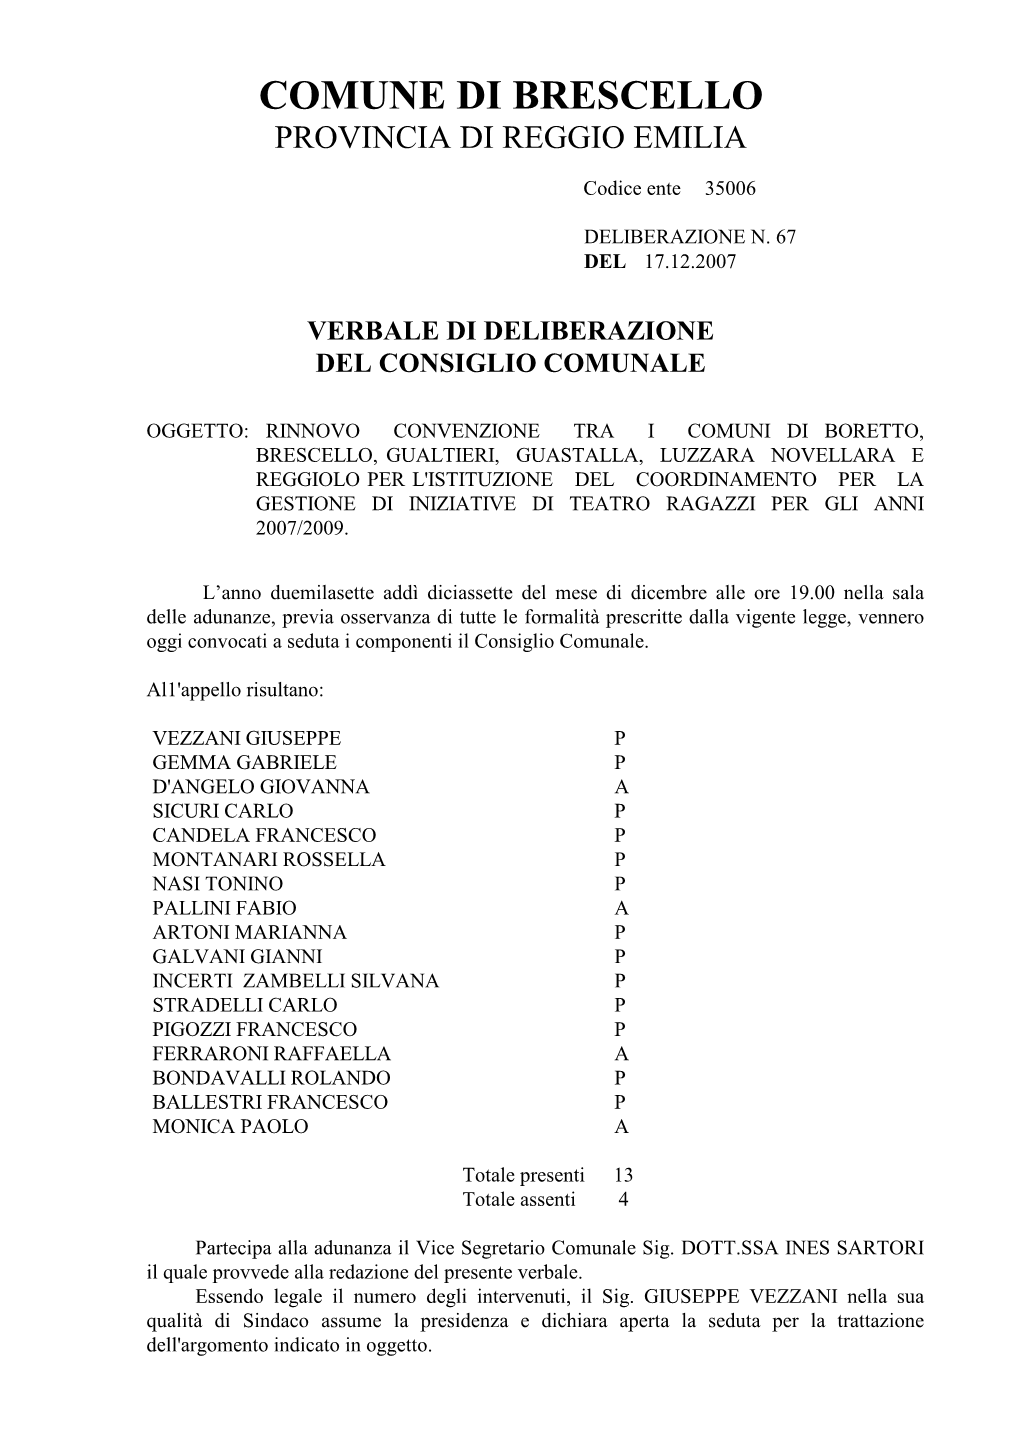 Rinnovo Convenzione Tra I Comuni Di Boretto, Brescello, Gualtieri